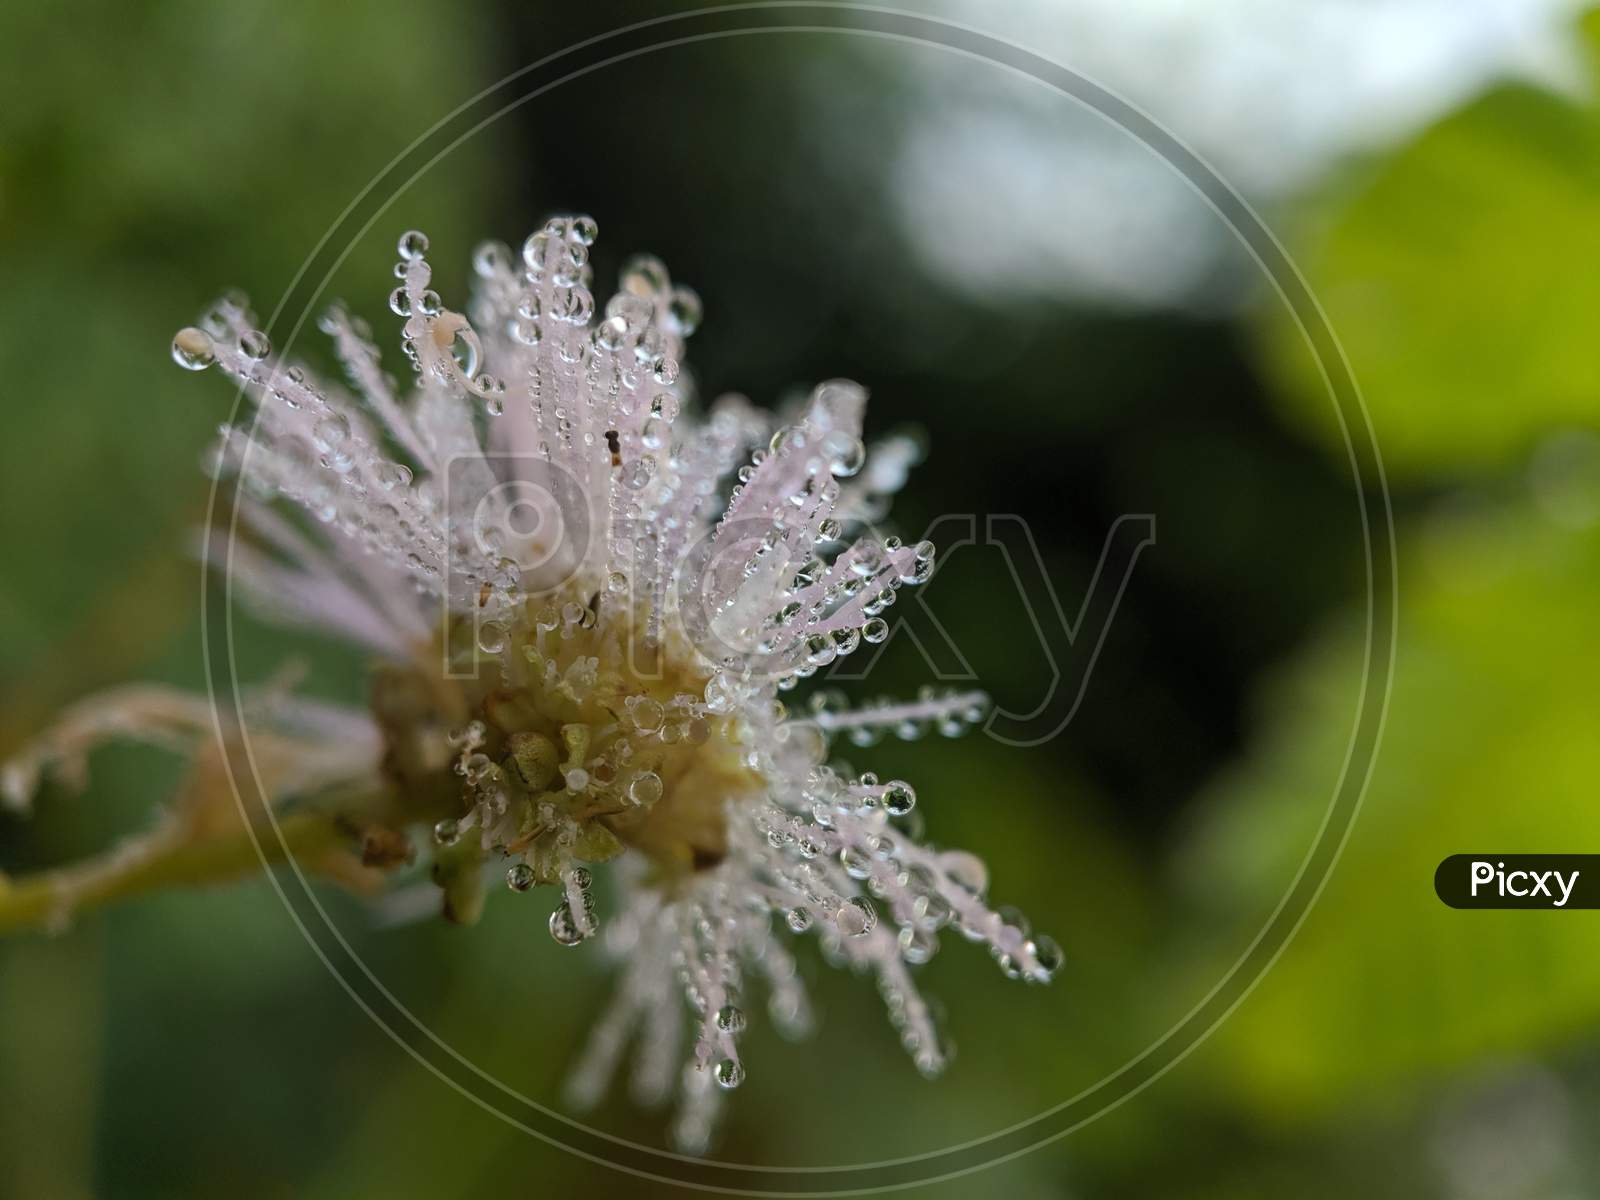 Dew on the Great Masterwort flower